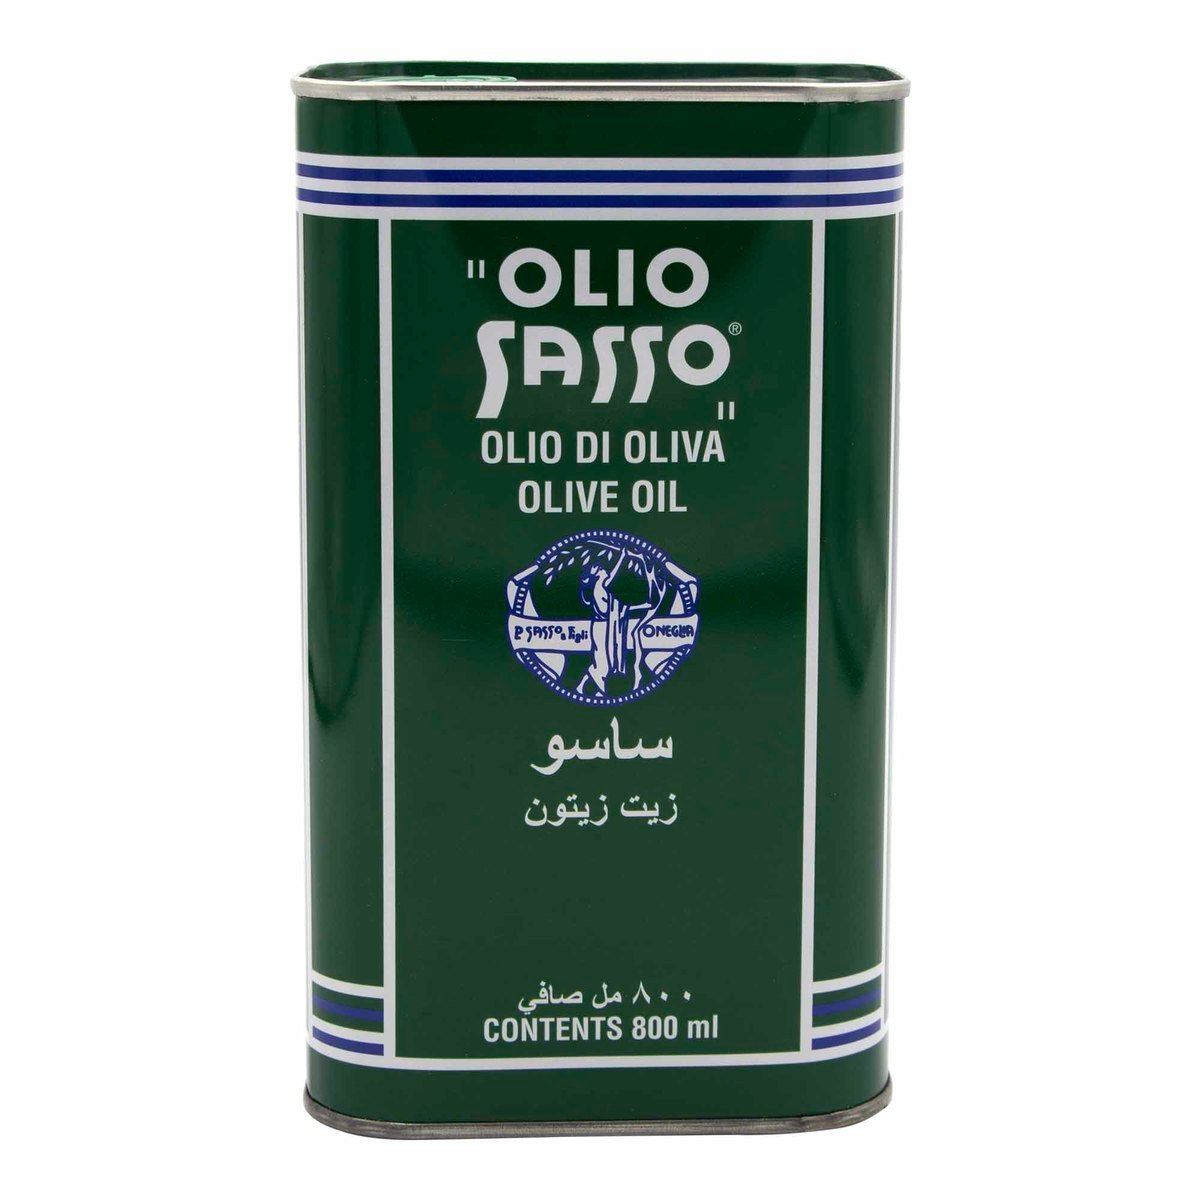 Olio Sasso Olive Oil 800ml